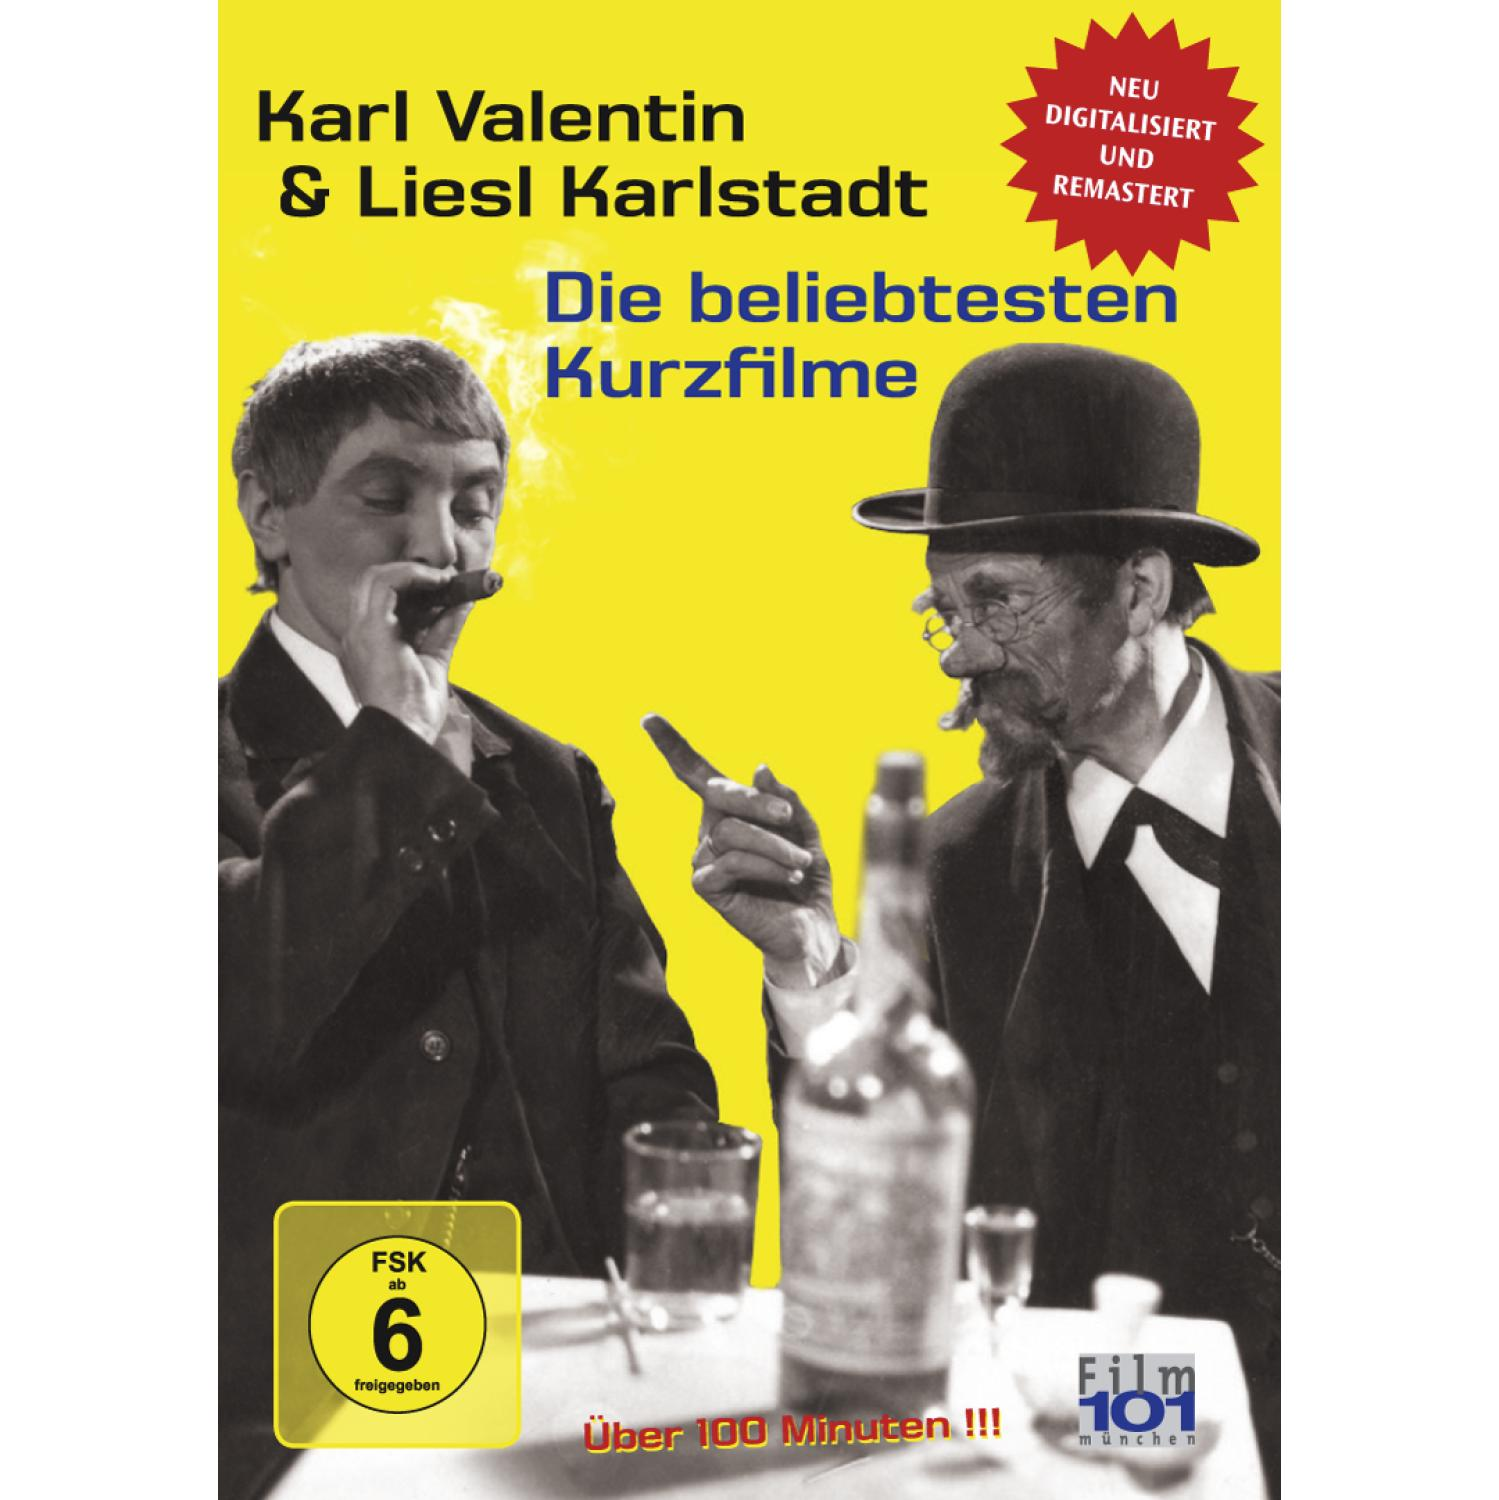 DIE KARLSTADT BELIEBTESTEN & KARL - LIESL DVD VALENTIN